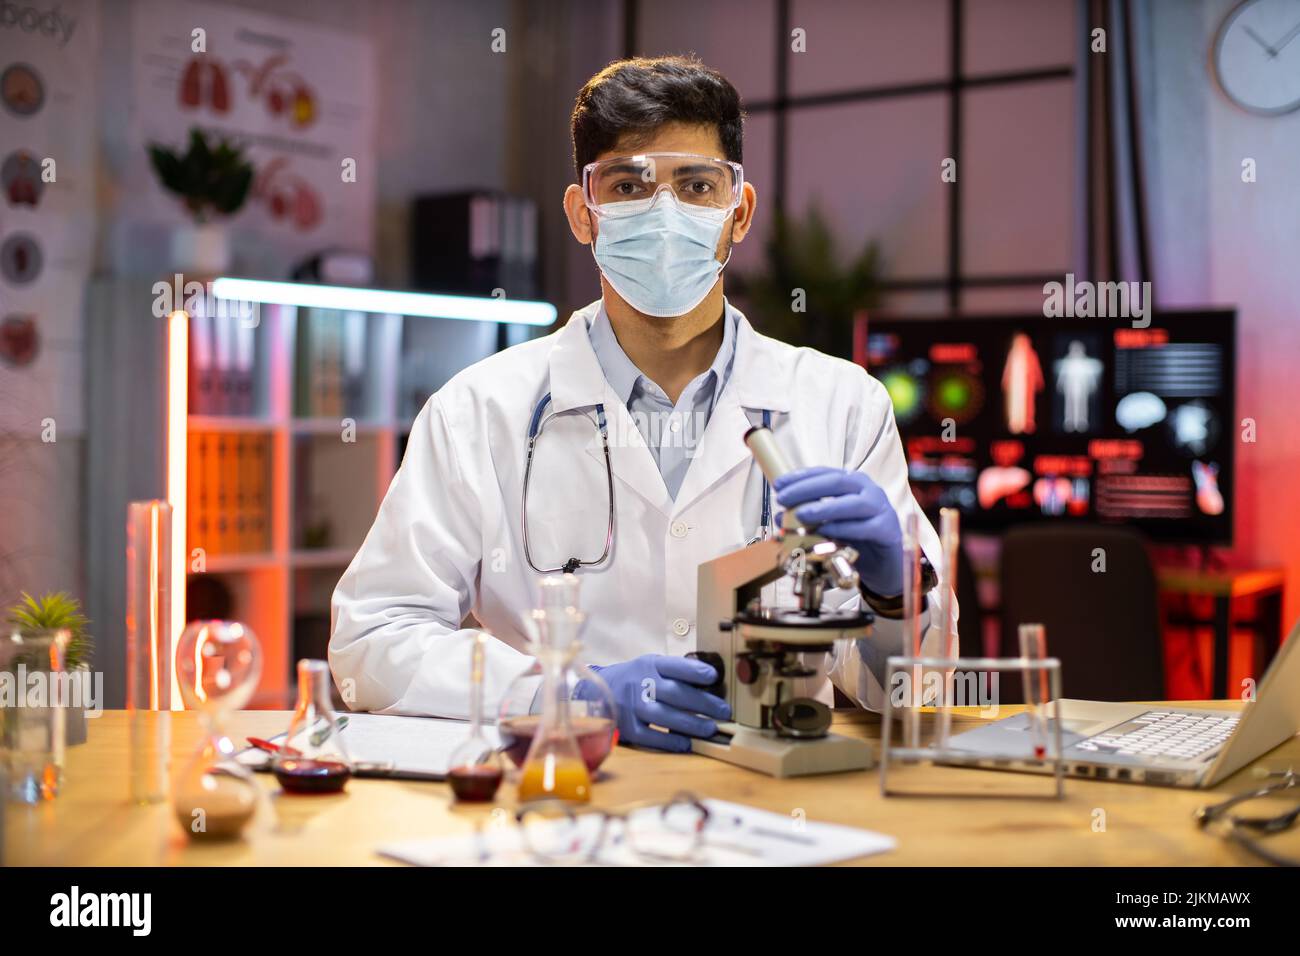 Gli scienziati o i medici maschi stanno testando i farmaci per prevenire e distruggere nuovi ceppi del virus attraverso il microscopio. Ricerca e sperimentazione di prodotti chimici efficaci. COVID-19 ora notturna. Foto Stock